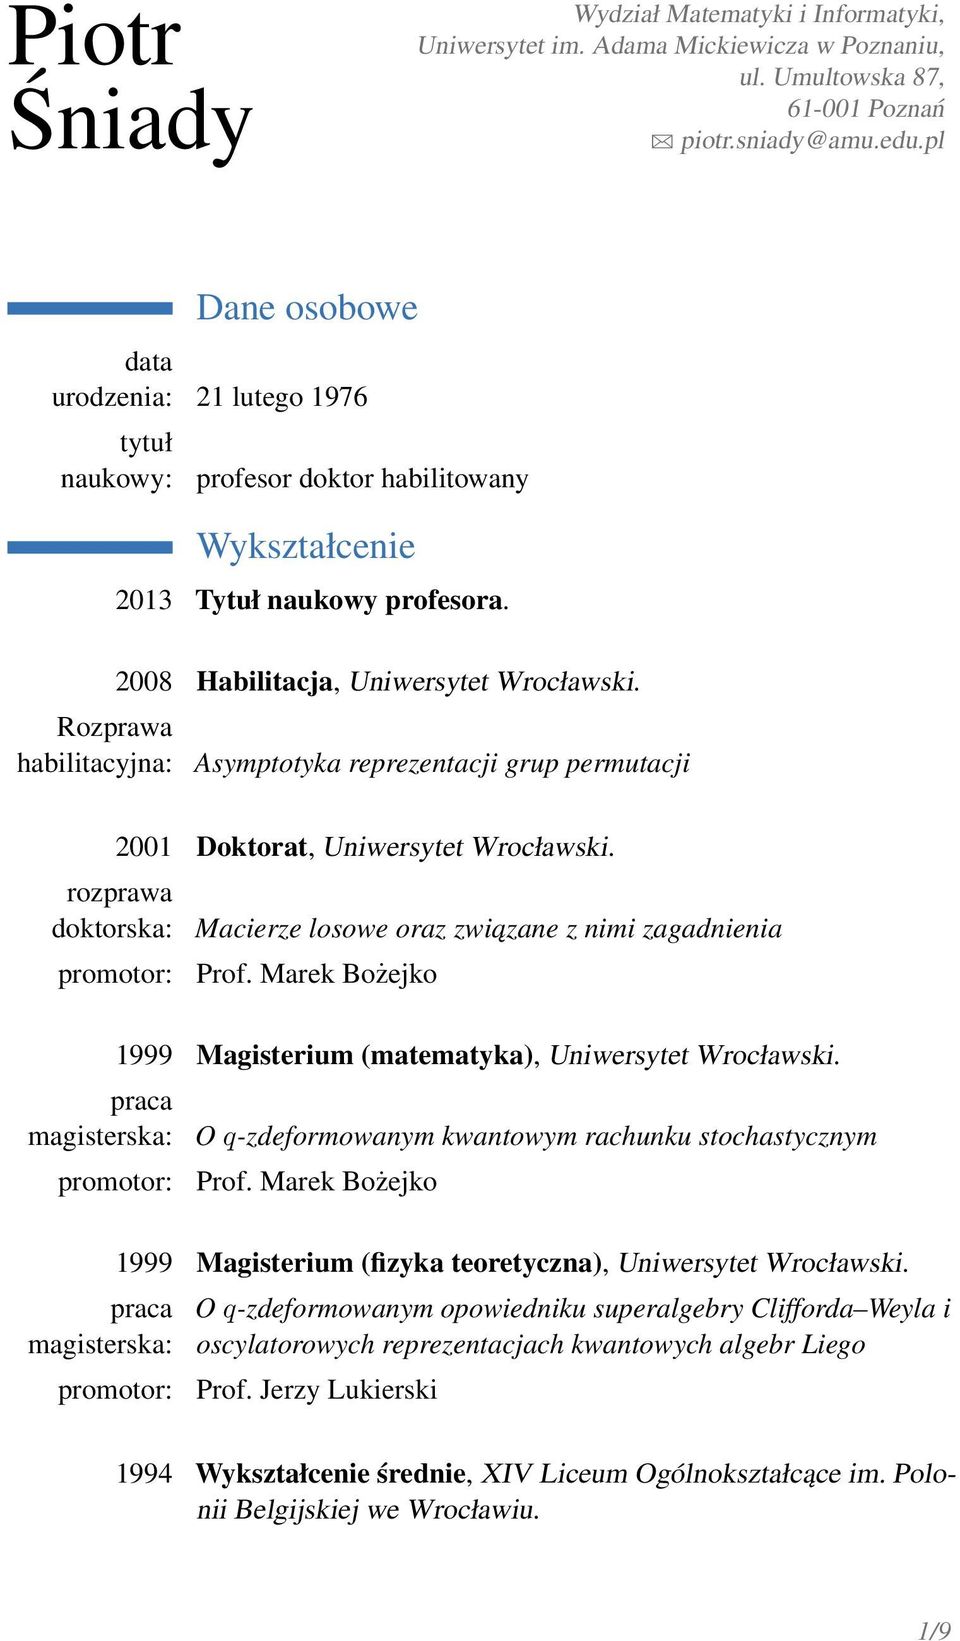 Asymptotyka reprezentacji grup permutacji rozprawa doktorska: 2001 Doktorat, Uniwersytet Wrocławski. promotor: Macierze losowe oraz zwiazane z nimi zagadnienia Prof.